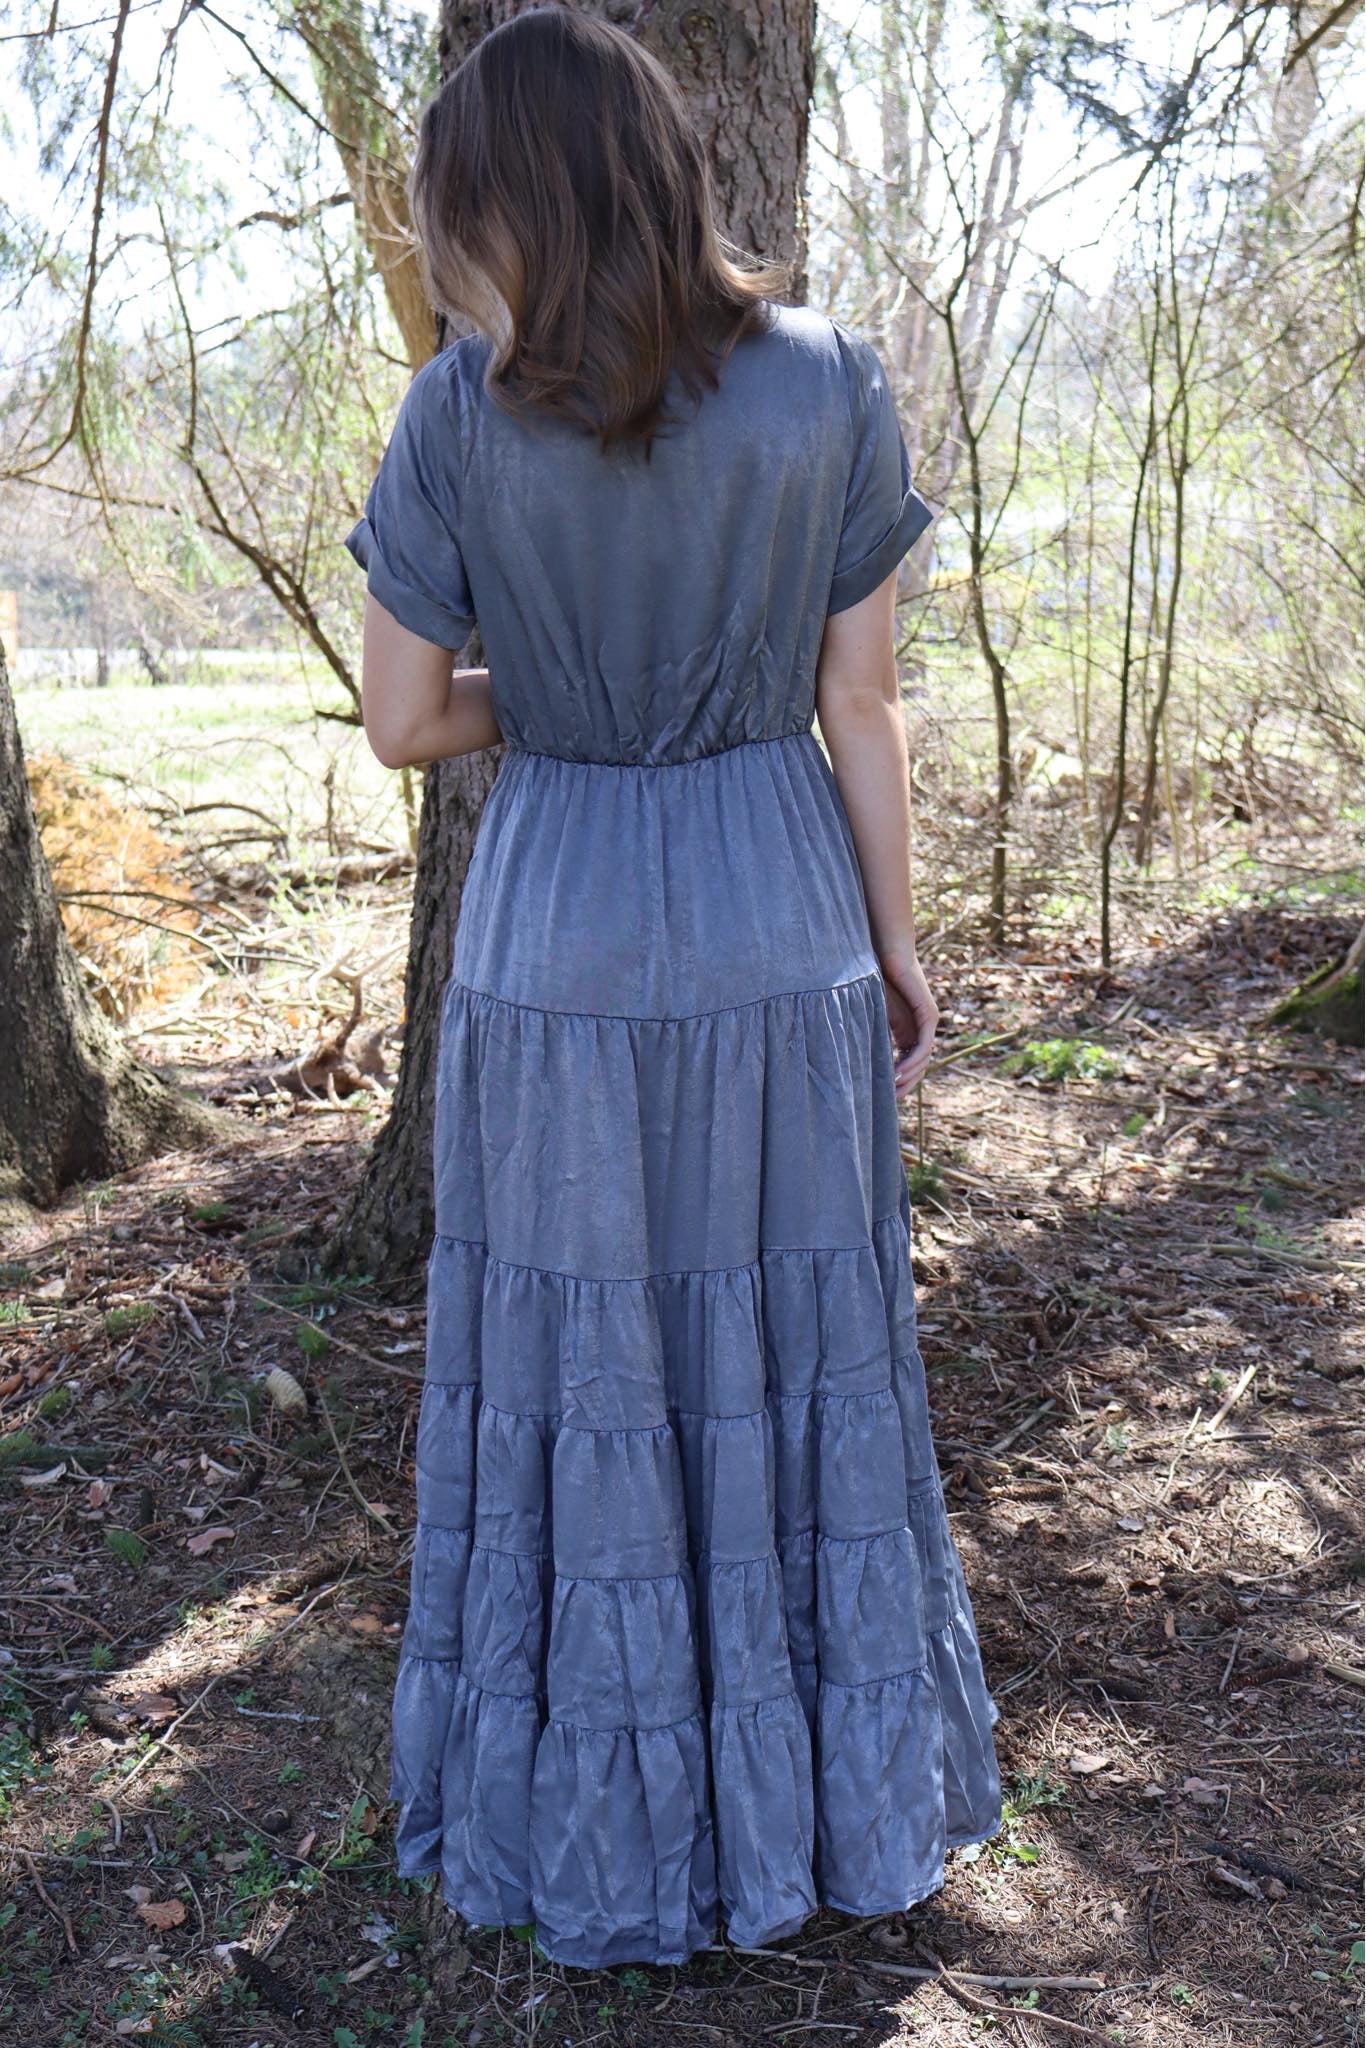 Kassandra Dress in Charcoal by Joyfolie